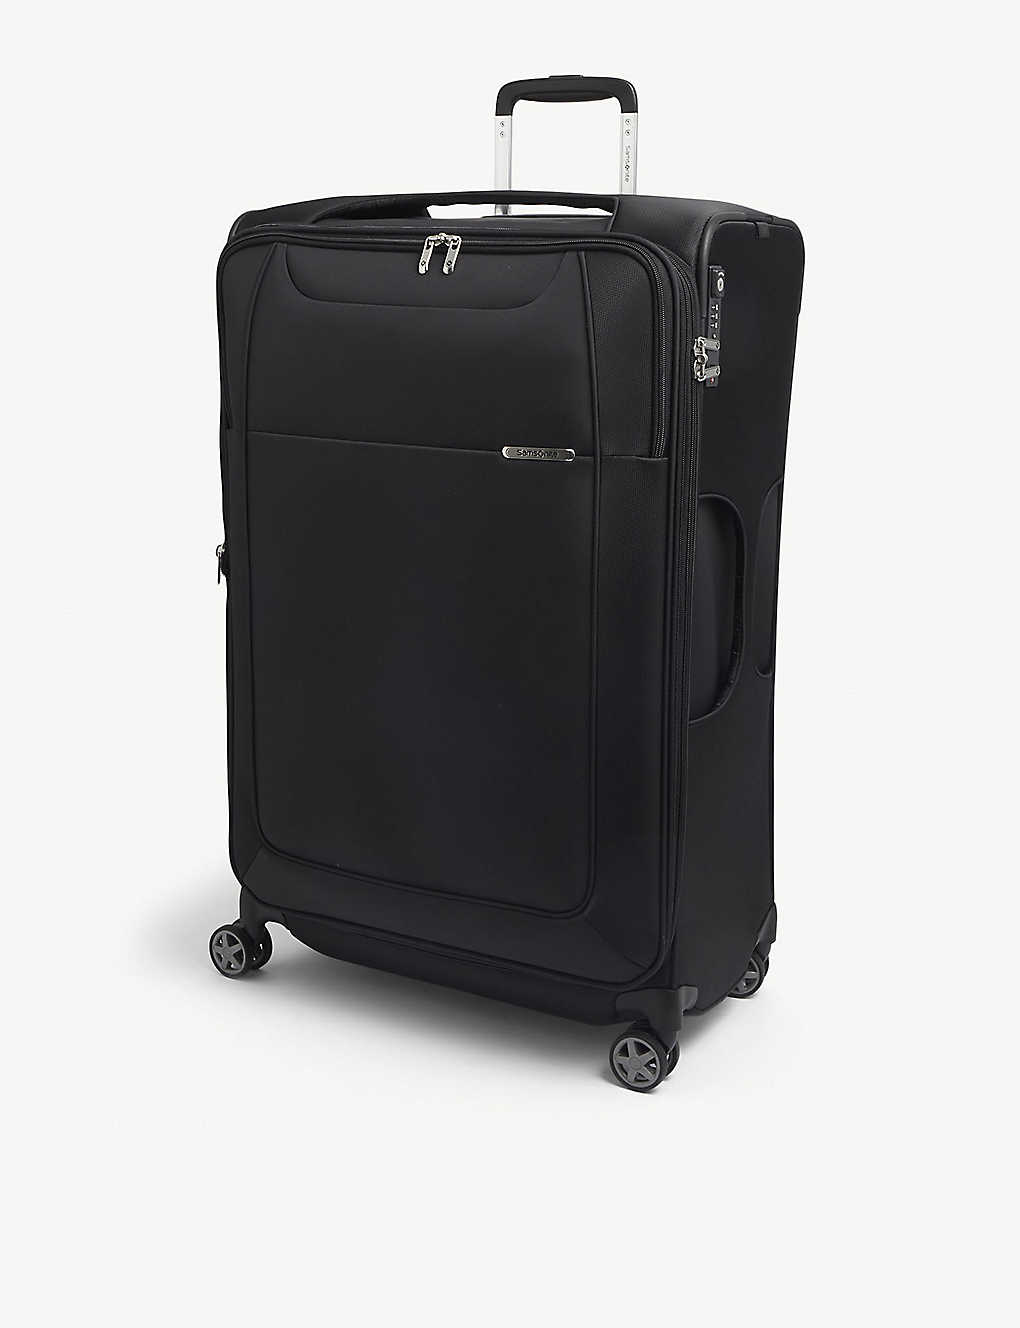 Samsonite Black Spinner Branded Woven Suitcase